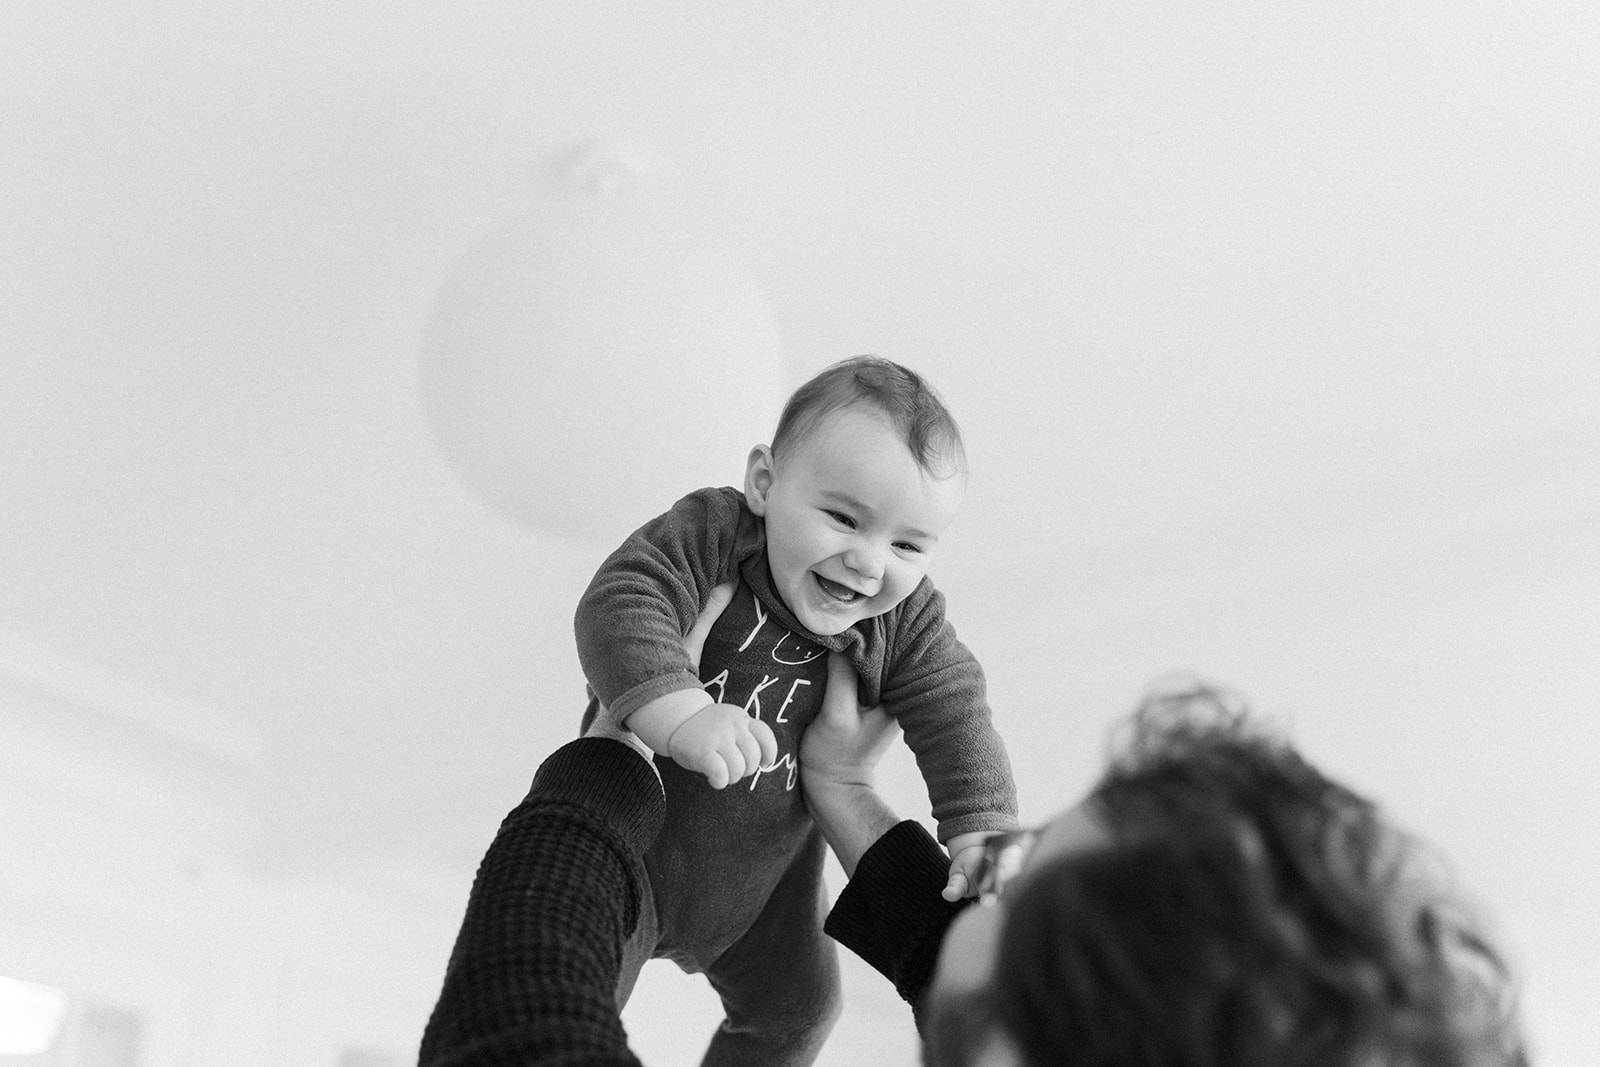 Séance naissance lifestyle Sain Mandé Val de Marne avec un bébé de 8 mois, jeu avec son papa.